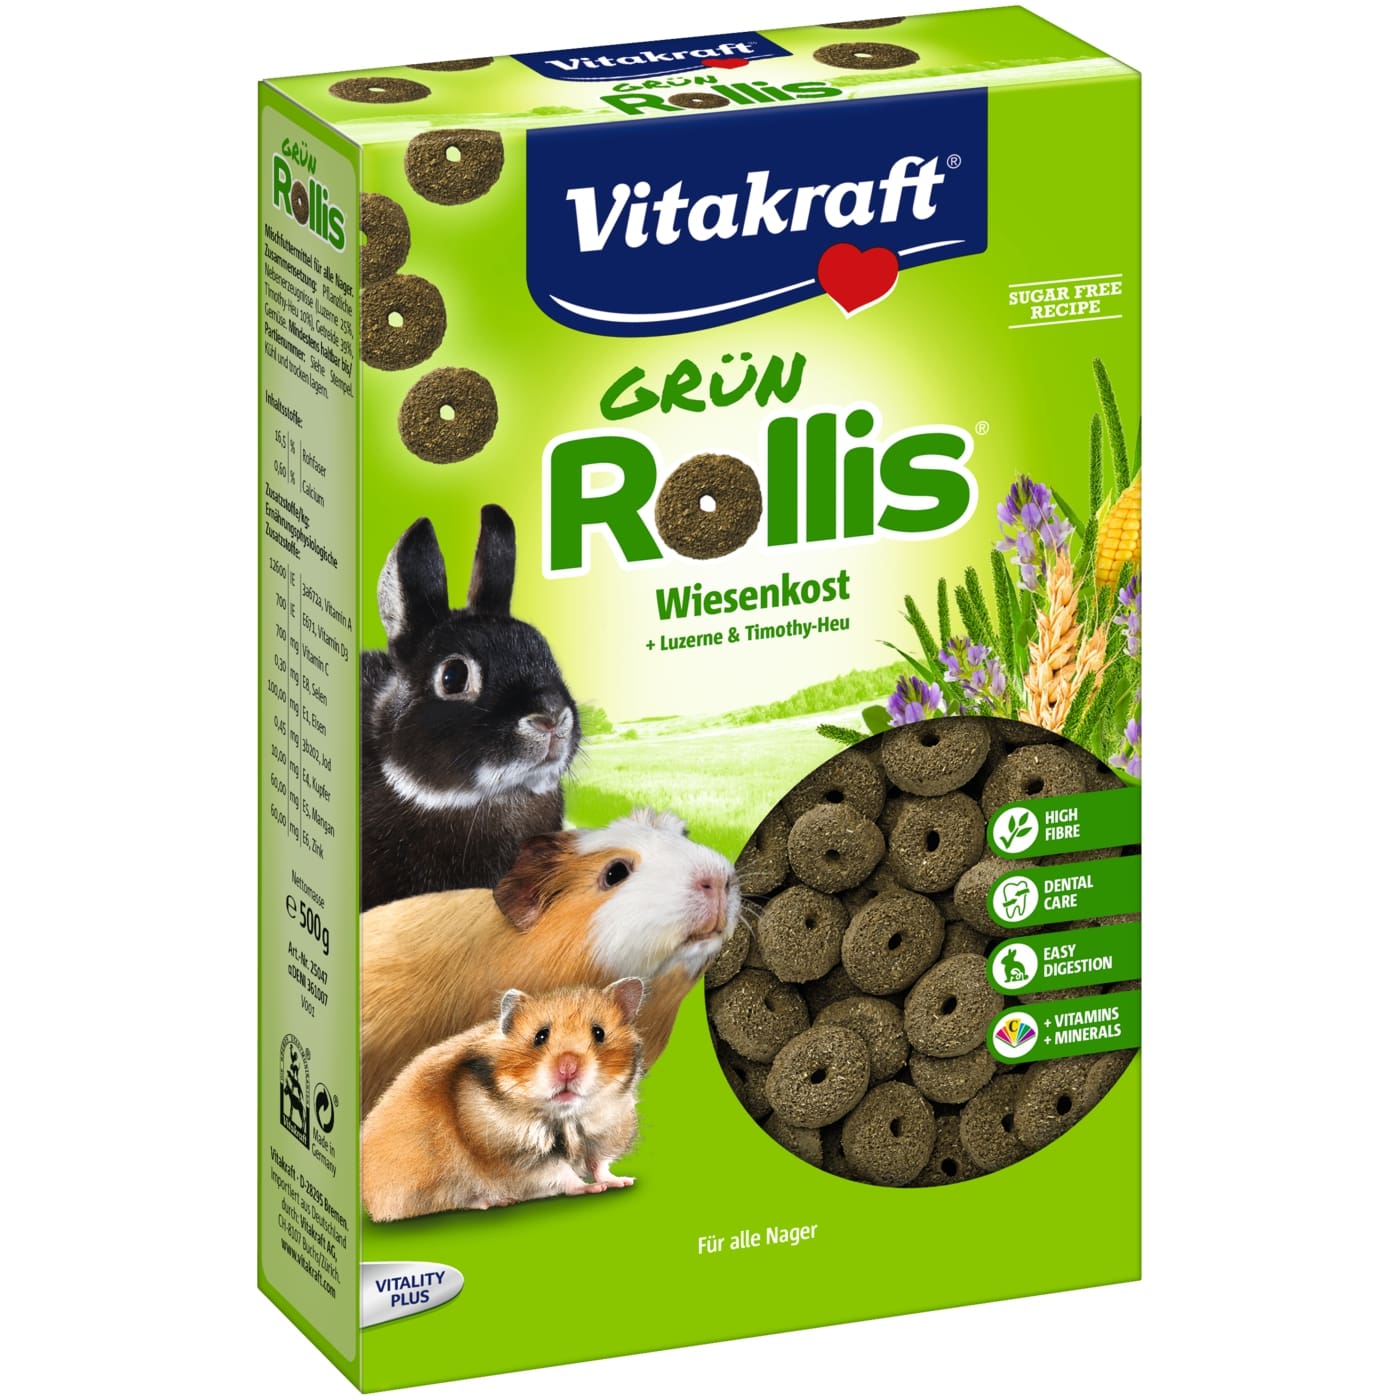 غذای خرگوش ویتاکرافت مدل Green Rollis کد 10647 وزن 500 گرم